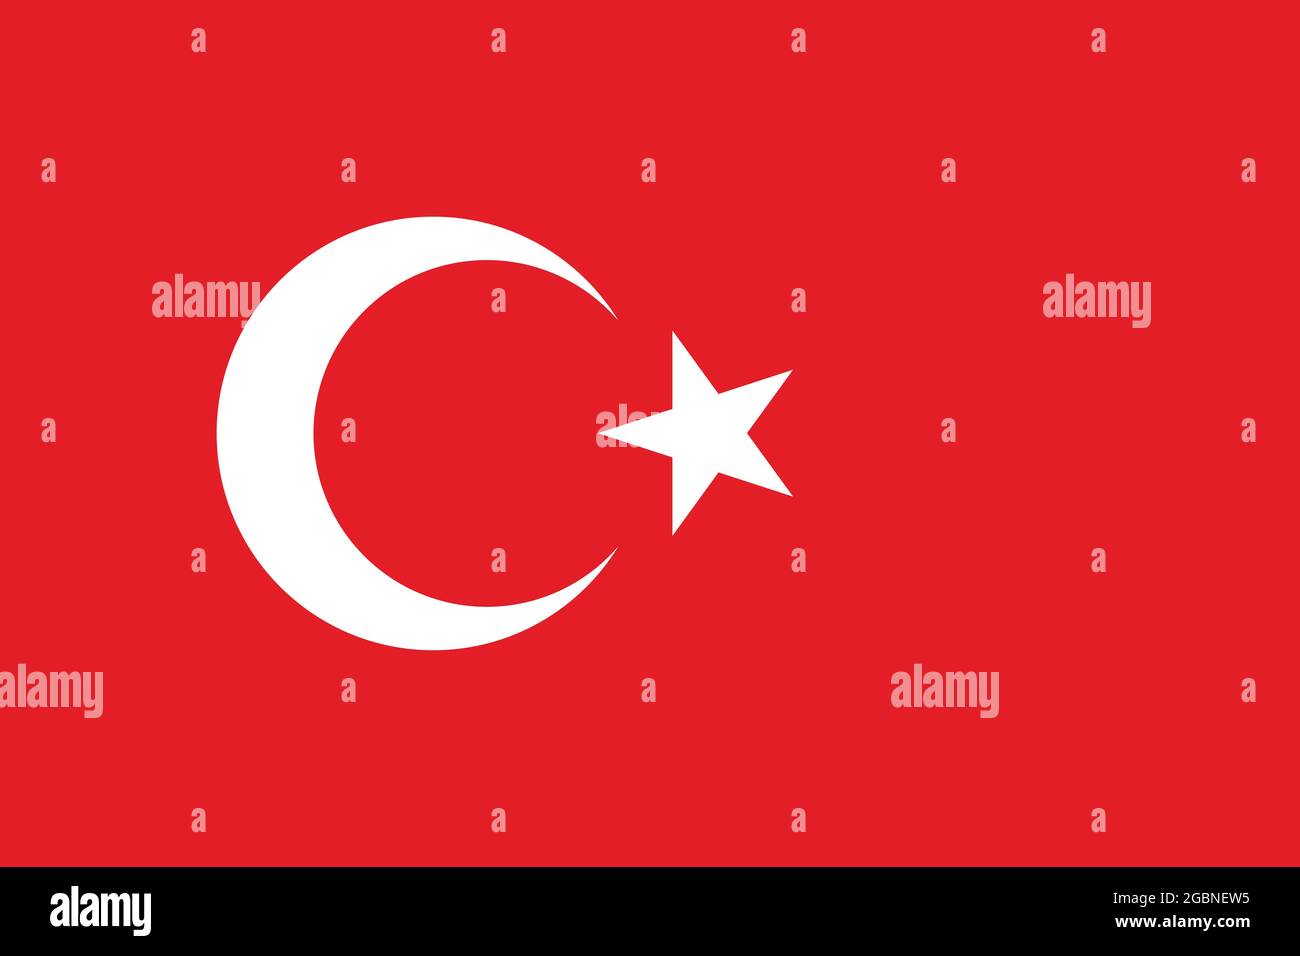 Nationalflagge der Türkei in Originalgröße und Farben Vektordarstellung,  türkische Flaggen mit Stern und Halbmond, al bayrak oder als al Sancak auf  Türkisch Stock-Vektorgrafik - Alamy